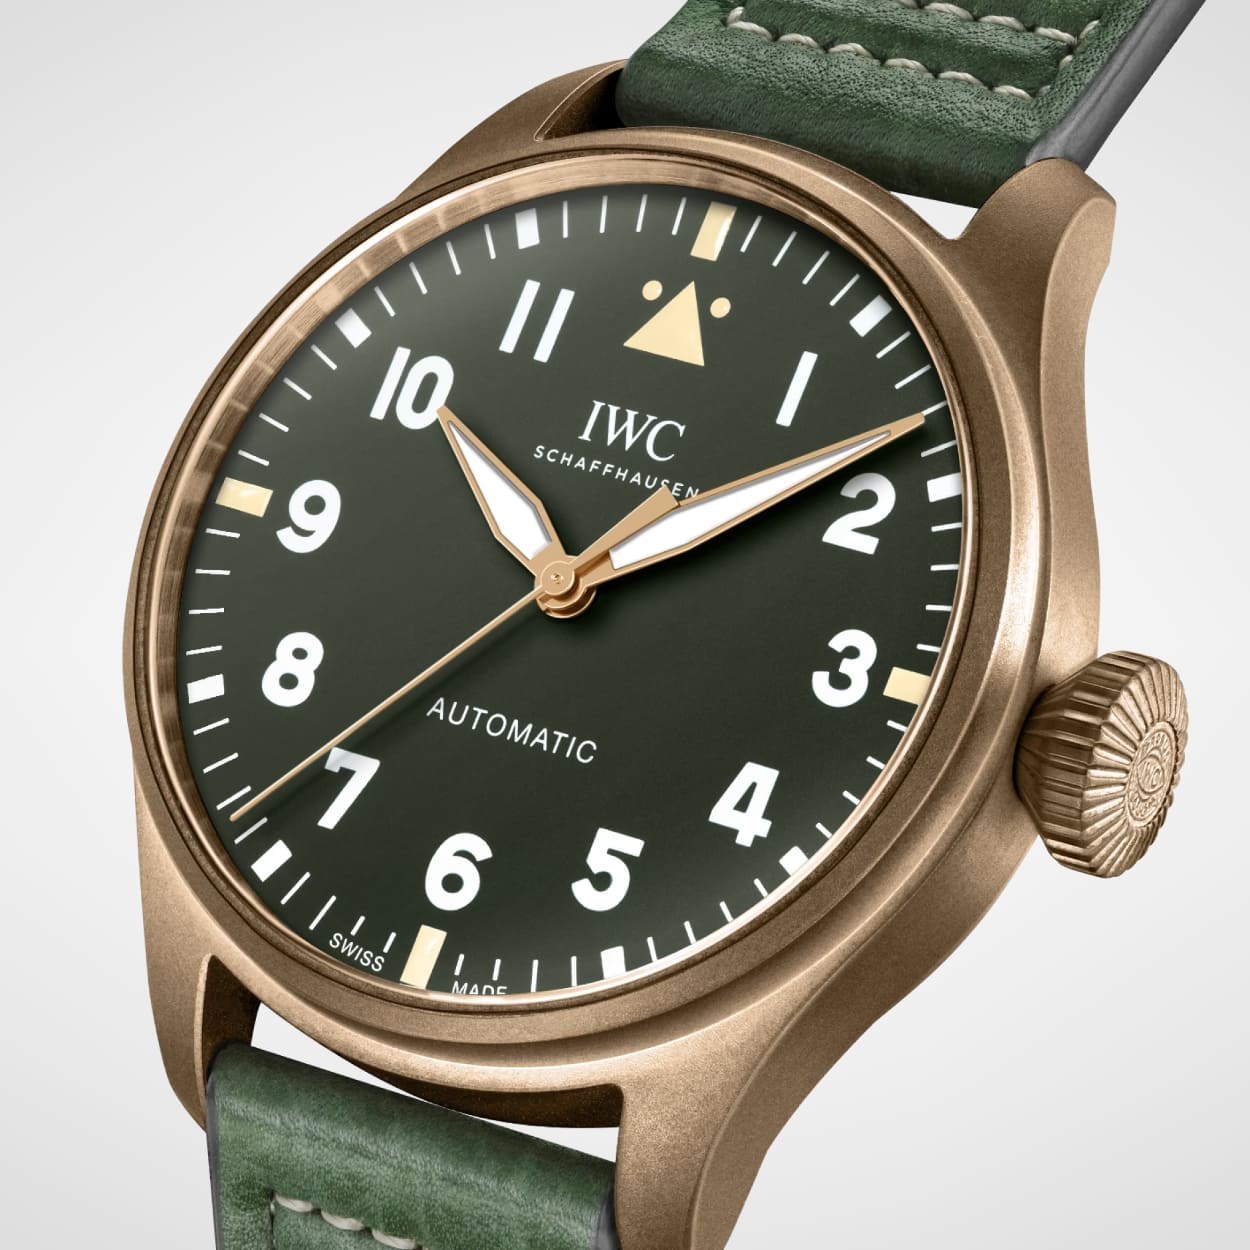 Leicht seitlicher Blick auf das Bronzegehaeuse der IWC Big Pilots Watch 43 Spitfire mit gruenem Zifferblatt